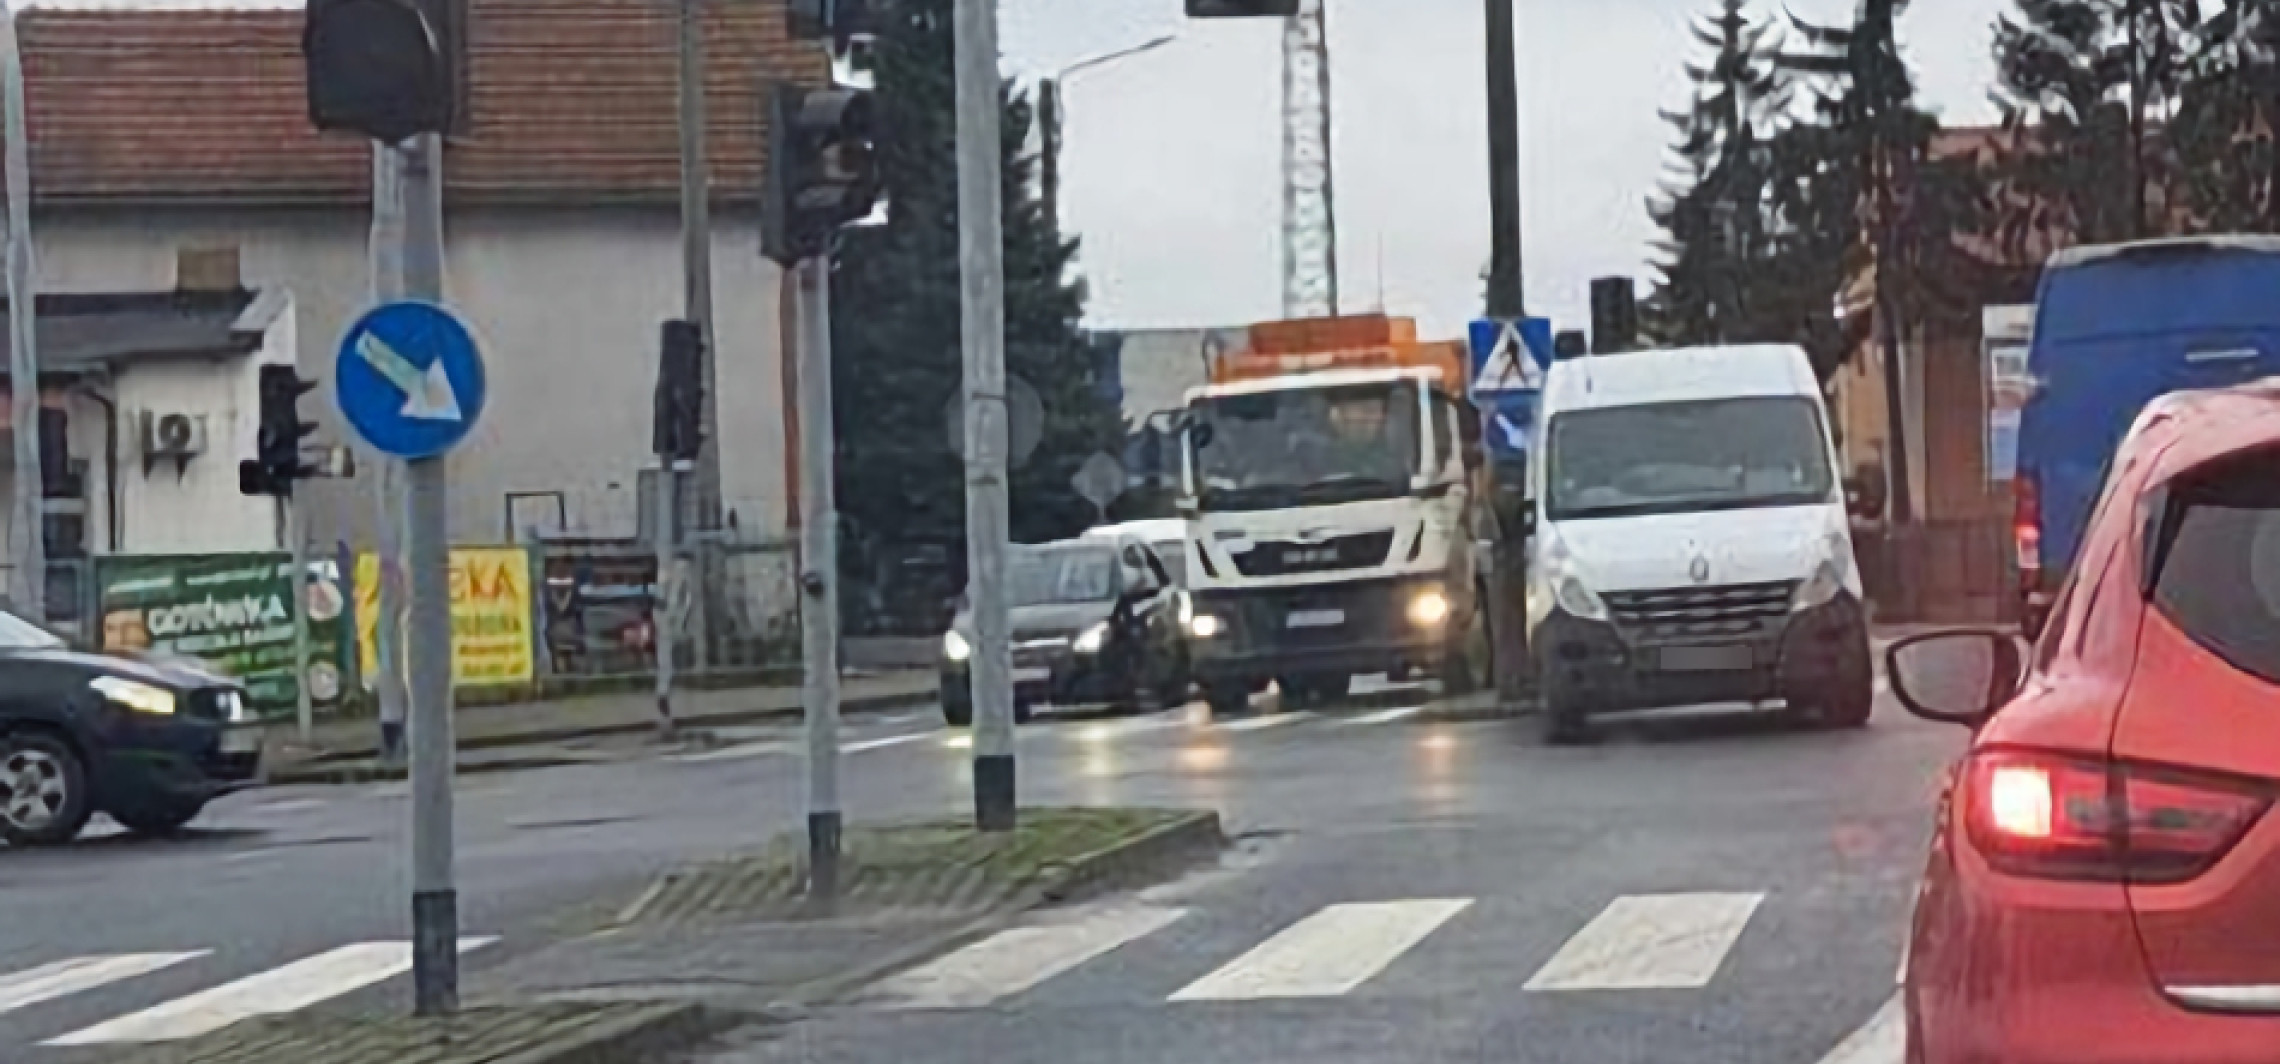 Inowrocław - Dostawczak blokował skrzyżowanie. Nie było kierowcy